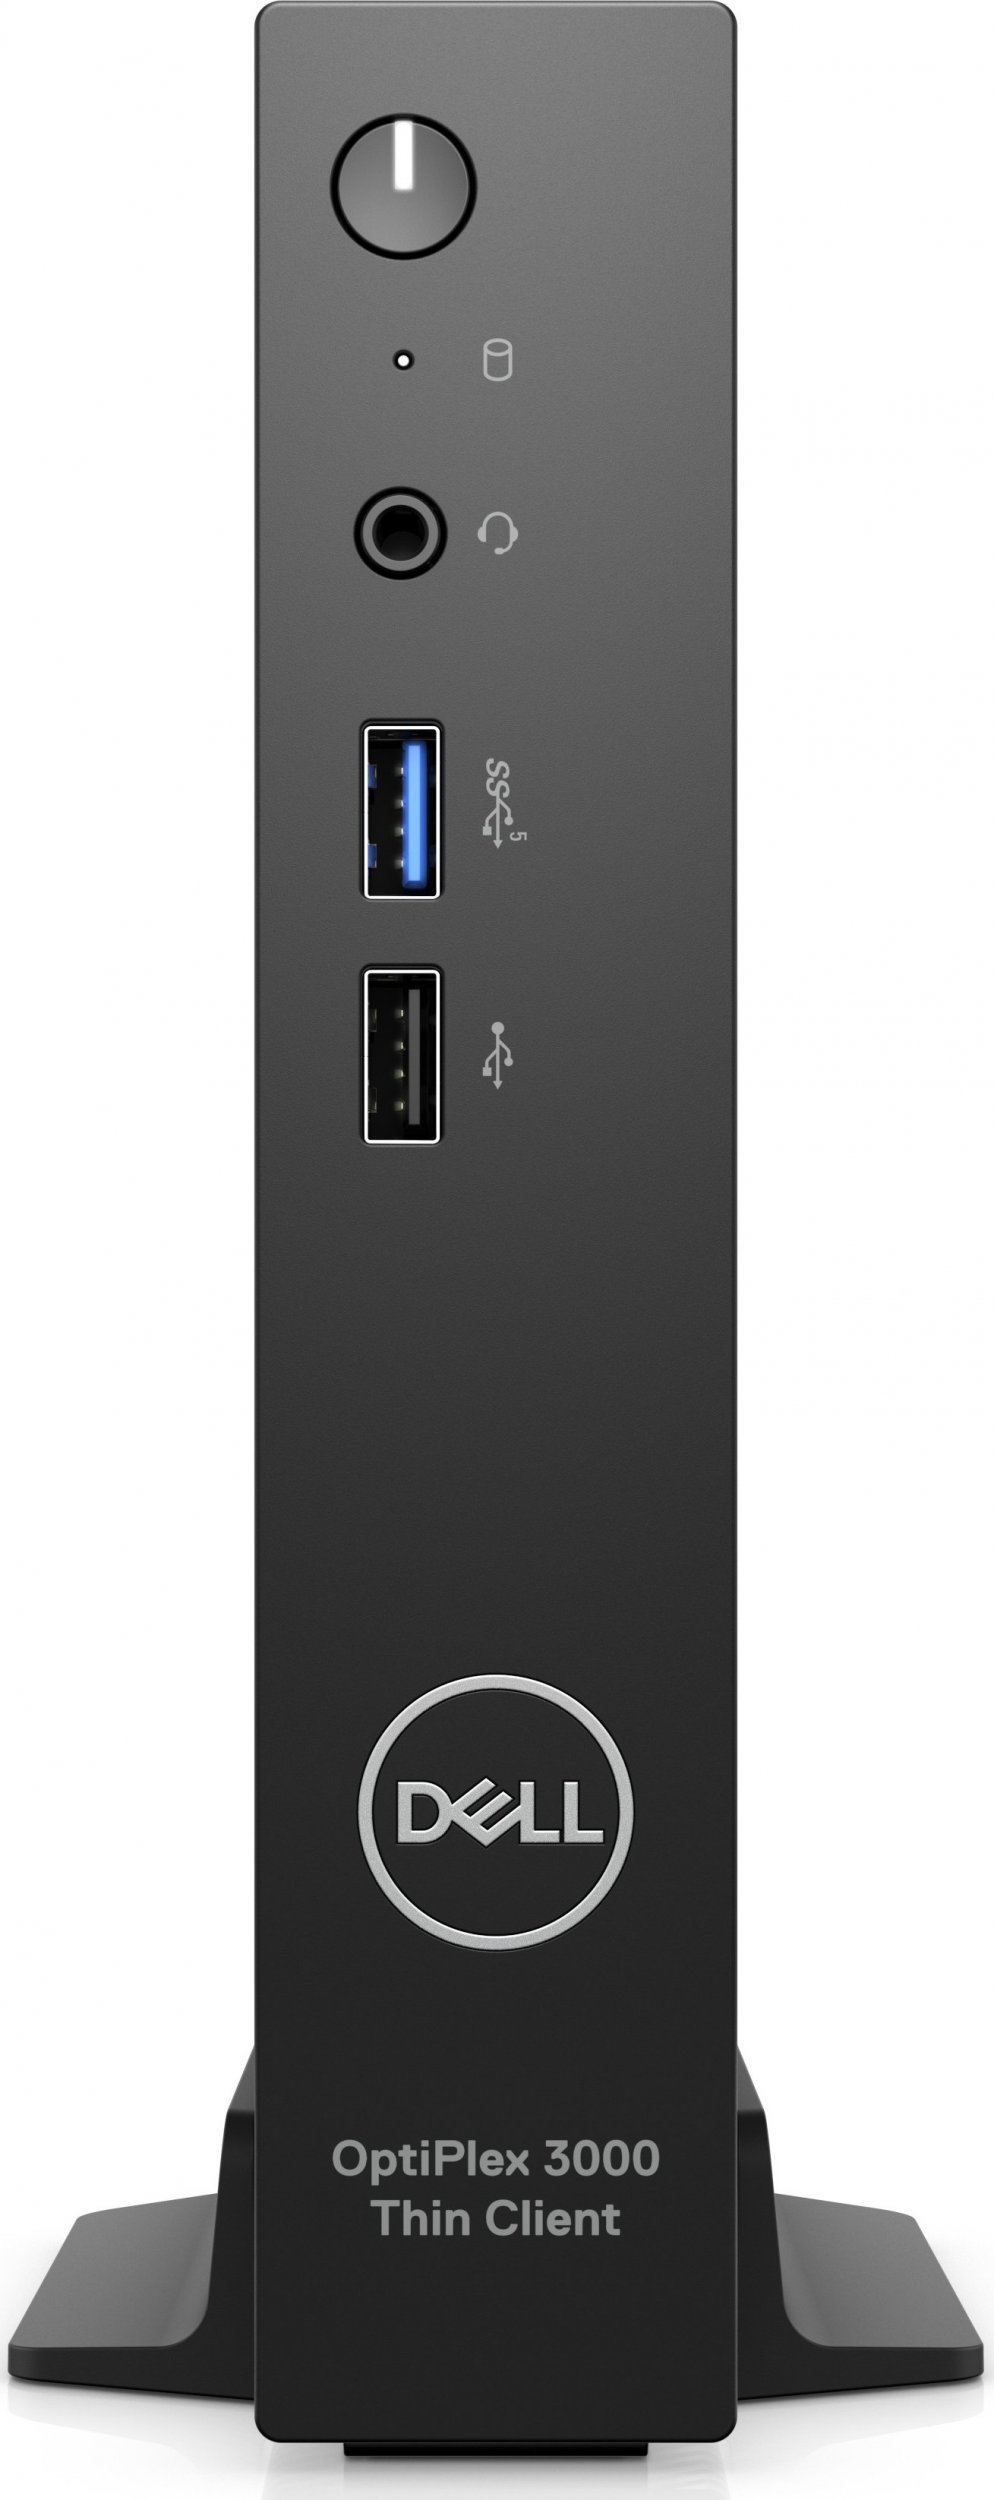 Komputer Dell DELL OptiPlex 3000 2 GHz Wyse ThinOS 1,1 kg Czarny N6005